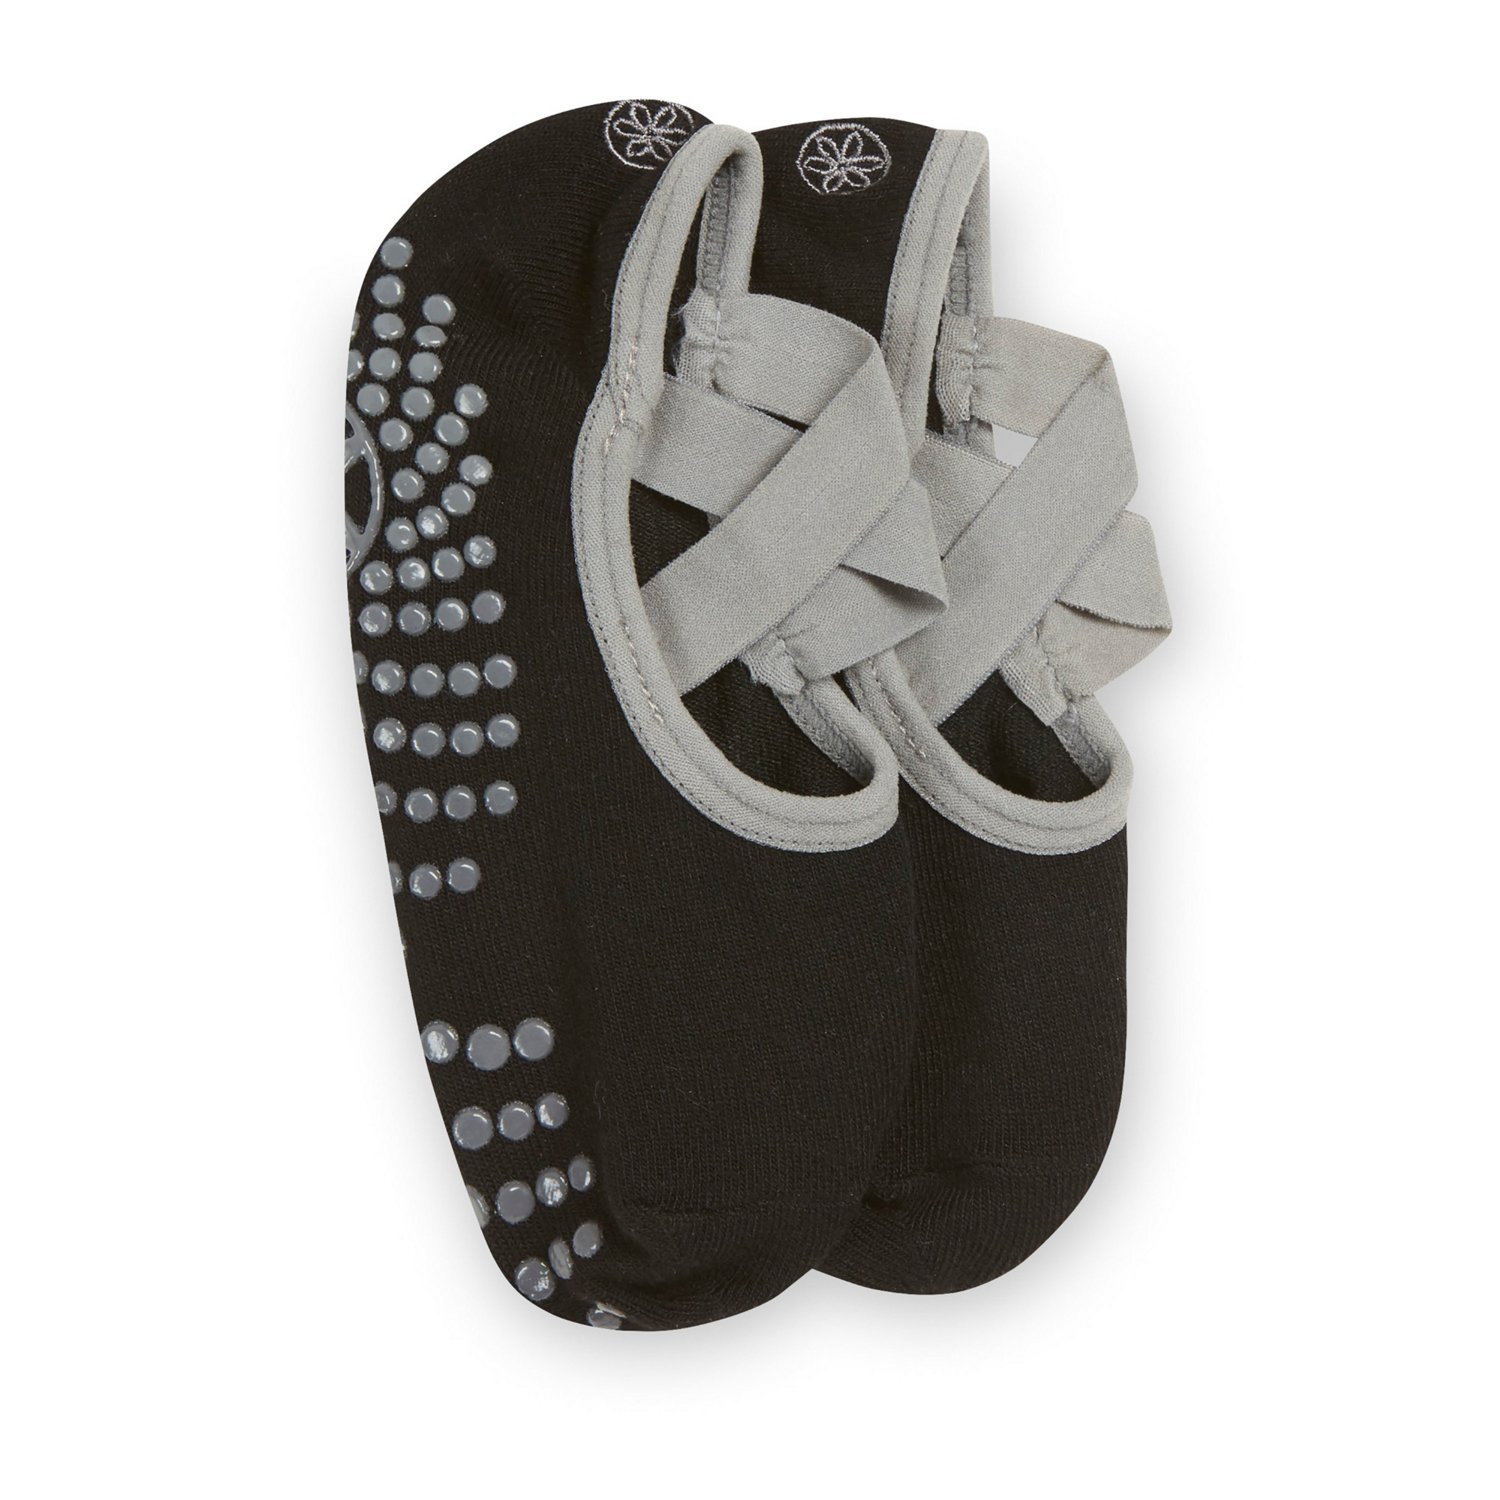 Gaiam Gaiam Grey Grippy Yoga Socks - Sports Equipment